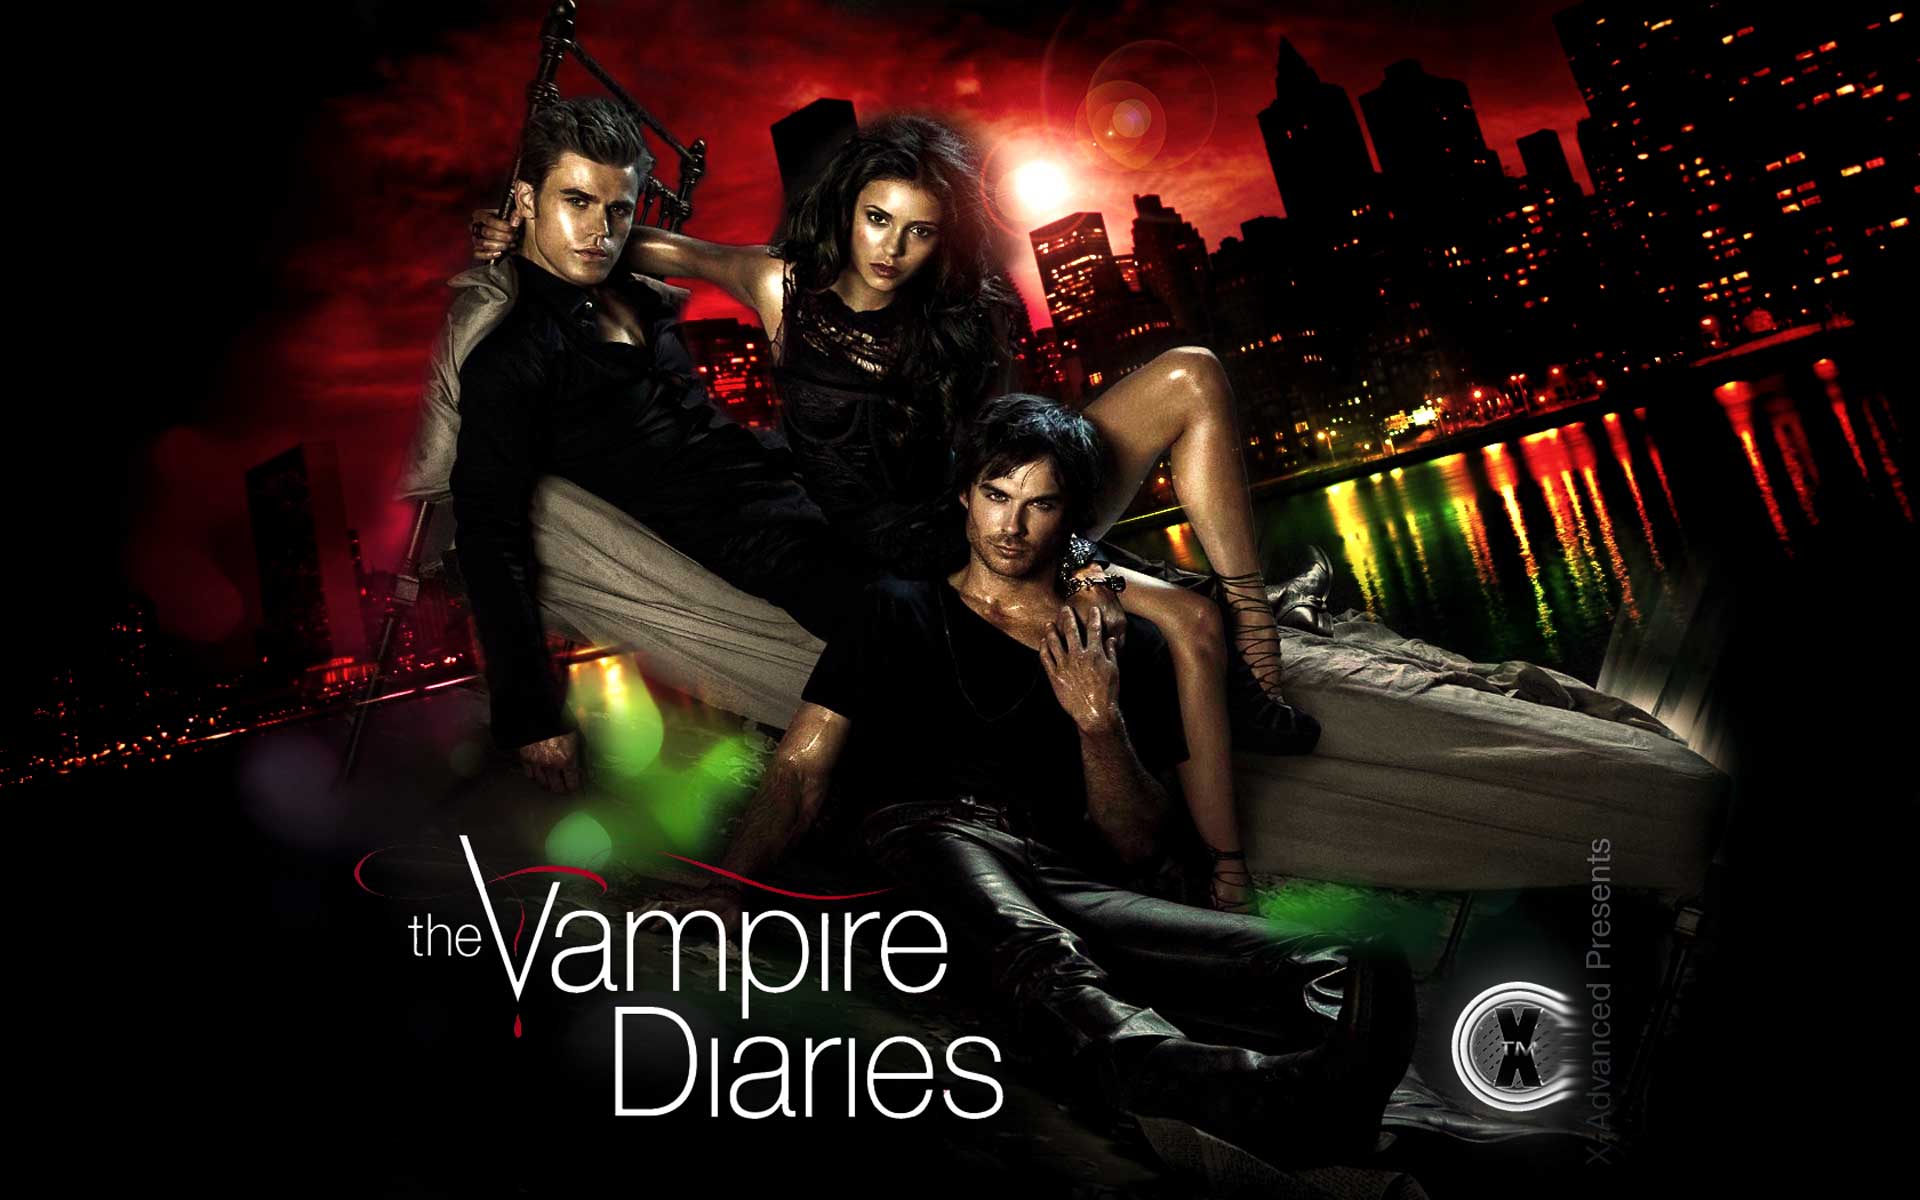 Vampires Diaries wallpaper